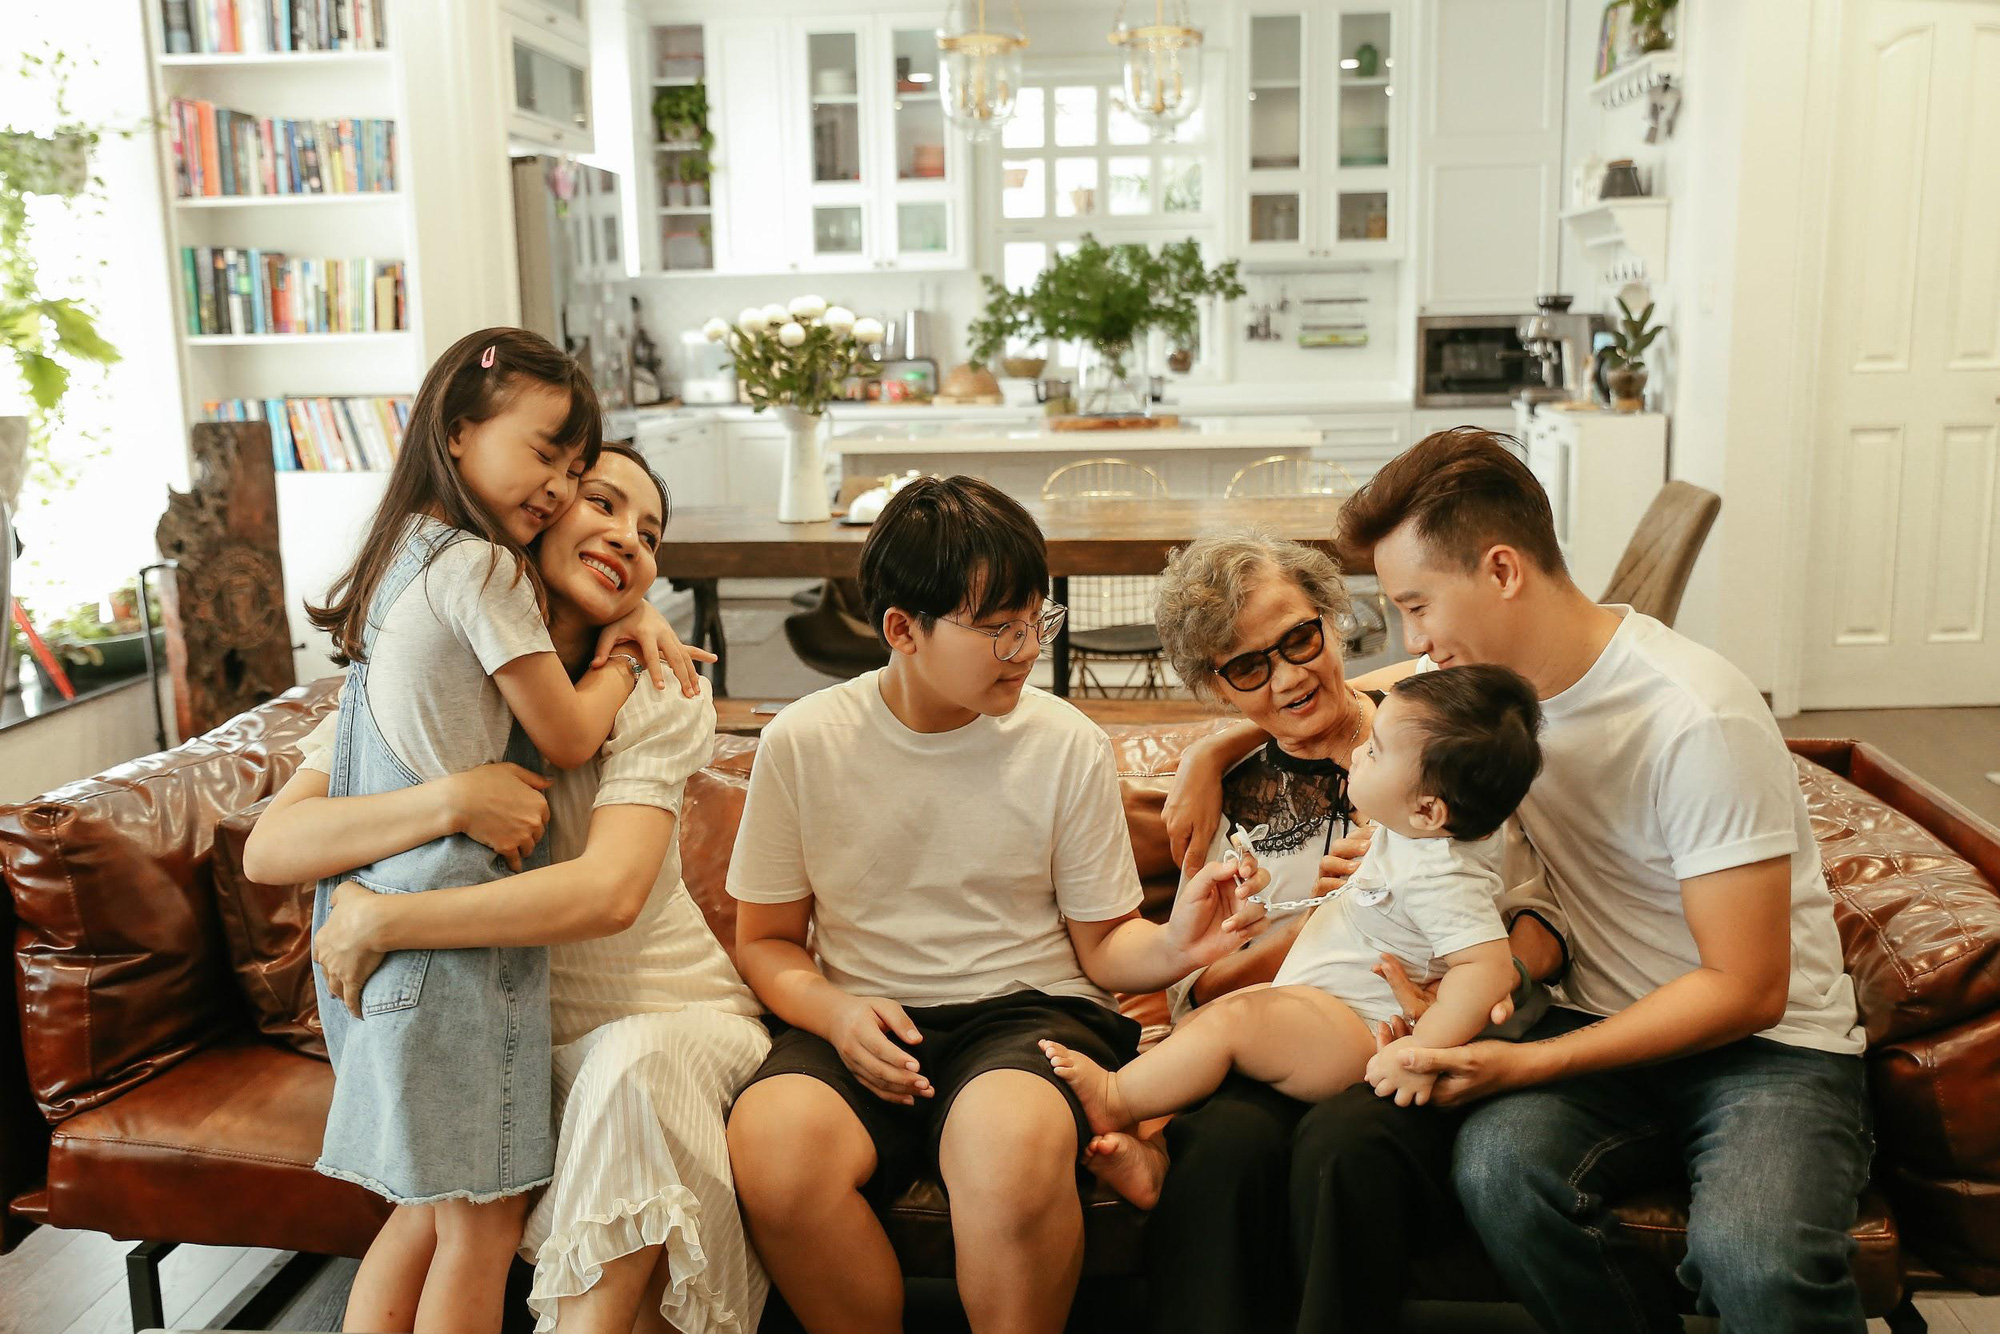 Hoàng Bách ra mắt MV cùng con gái 8 tuổi khiến ai nghe xong cũng muốn về nhà ôm chầm lấy gia đình mình - Ảnh 3.